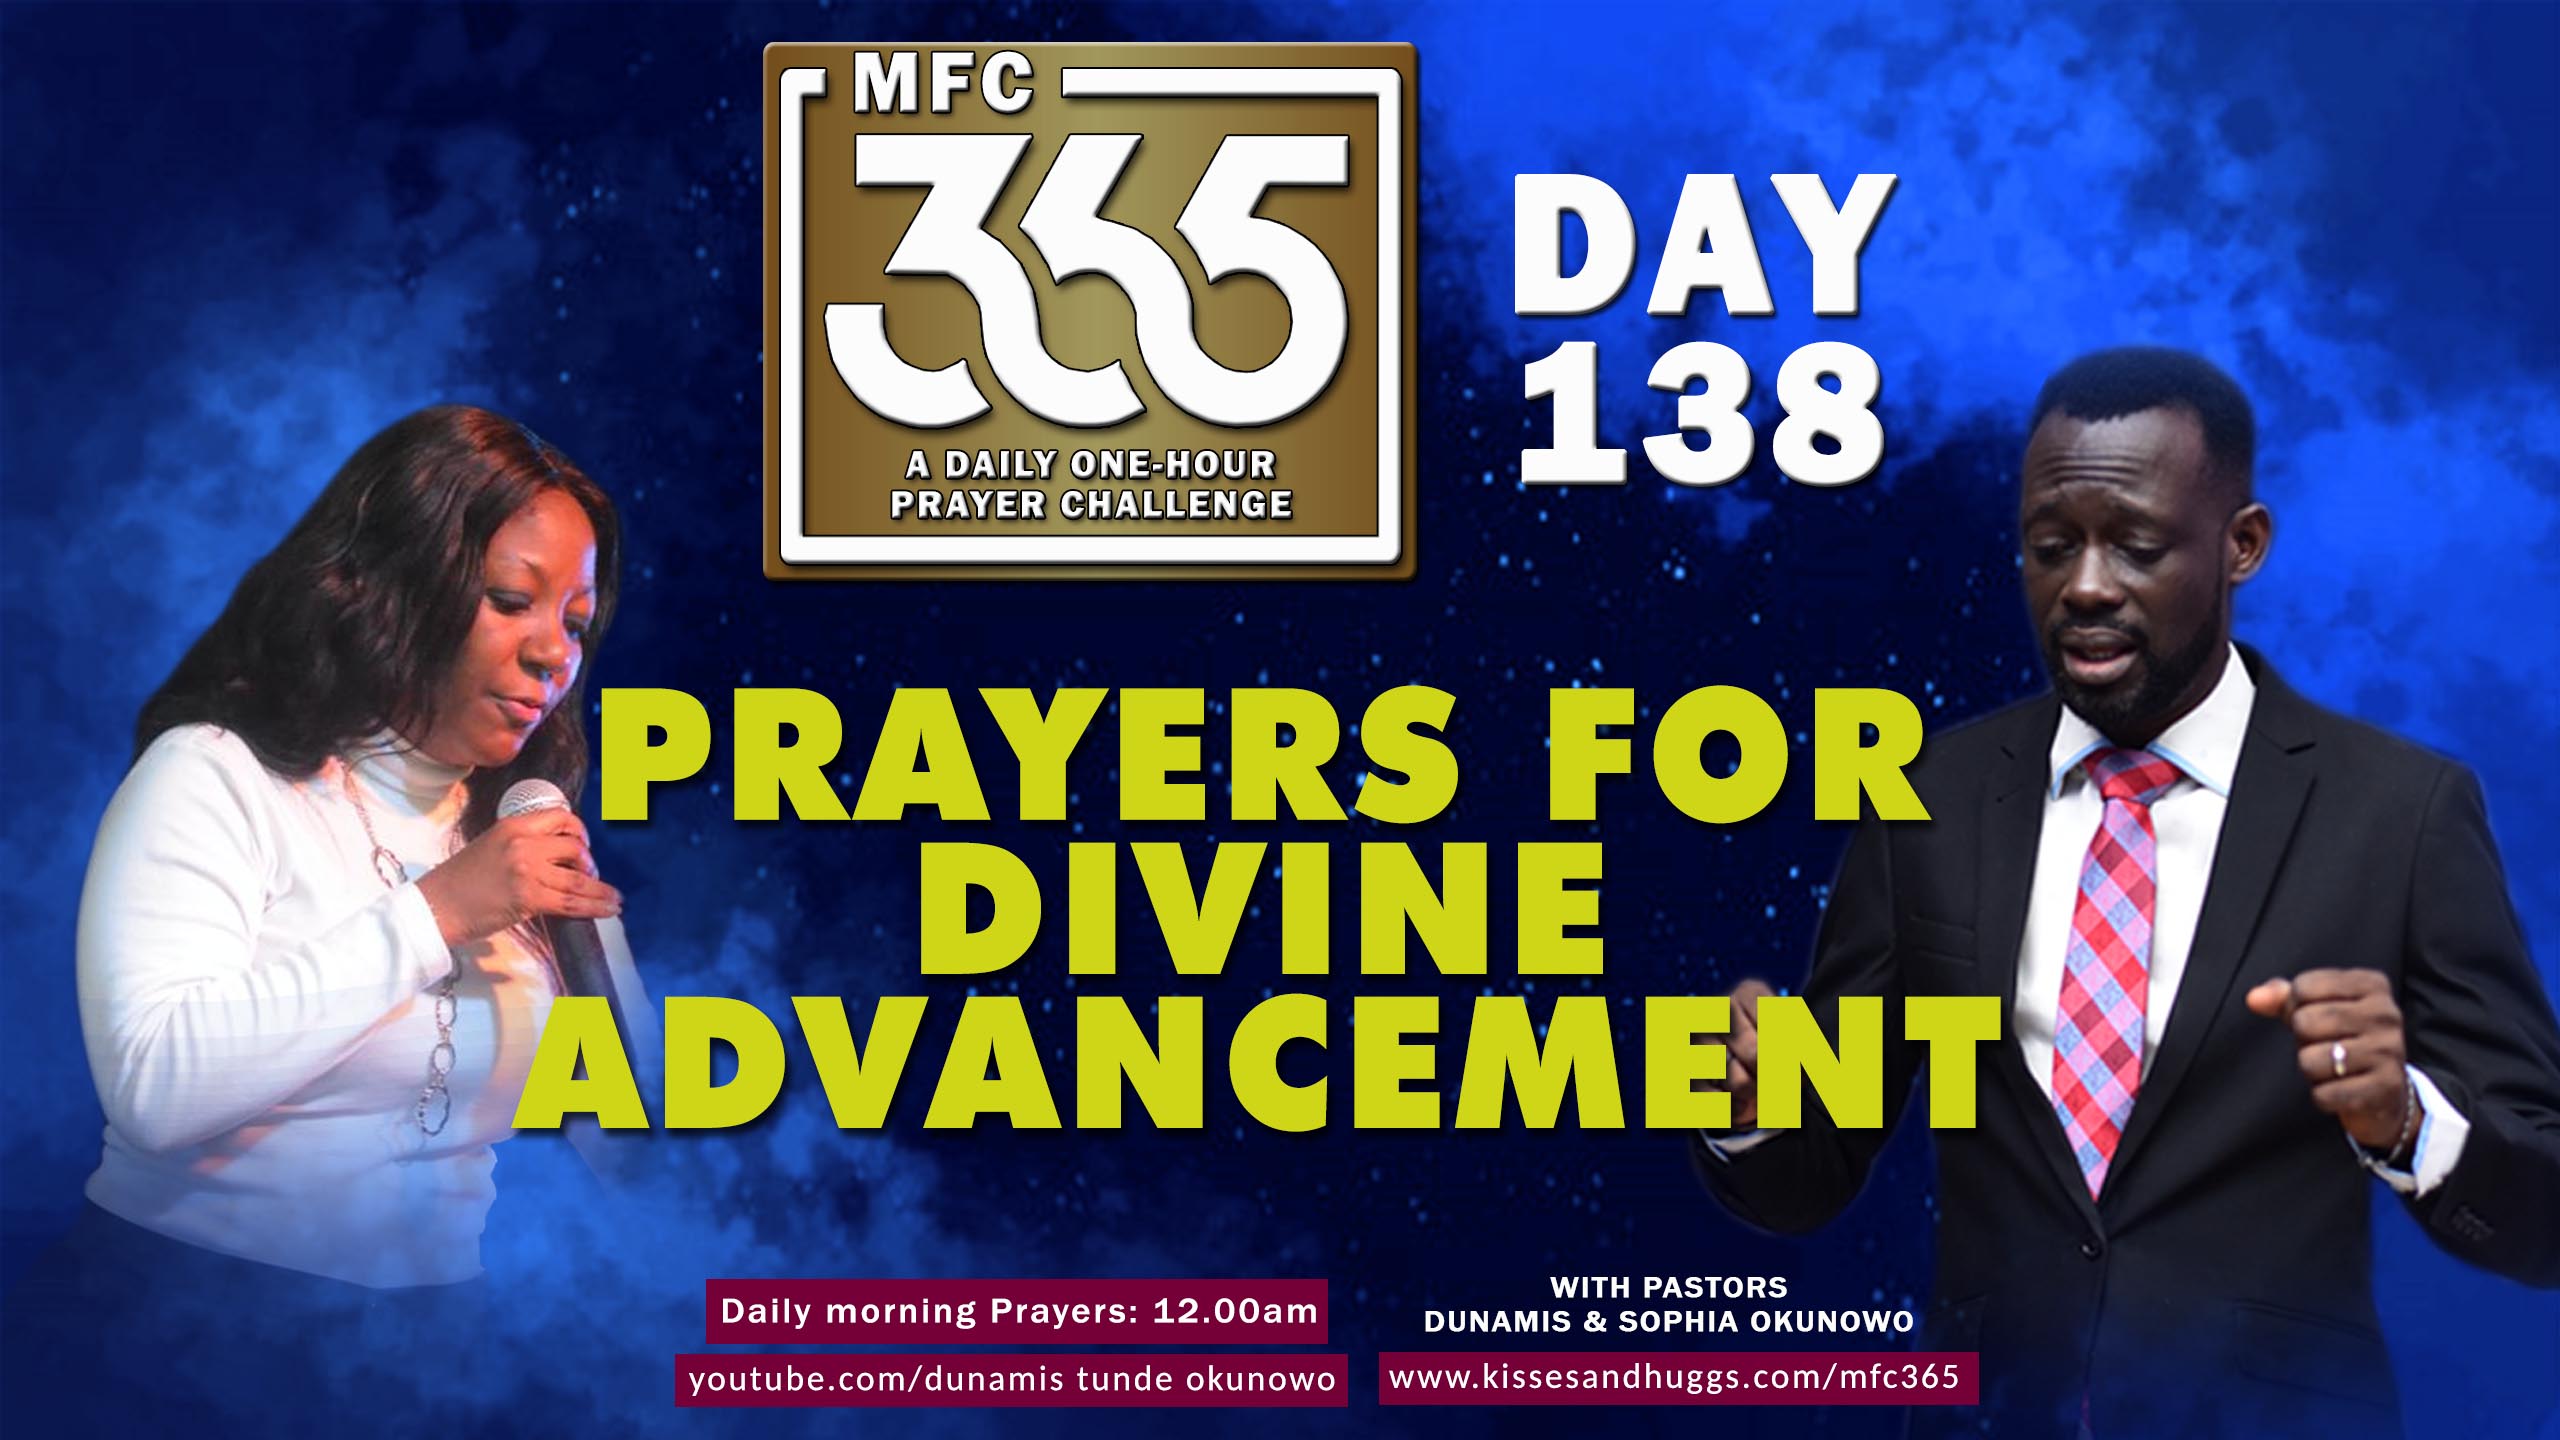 MFC 365 Challenge – Day 138 – Divine Advancement